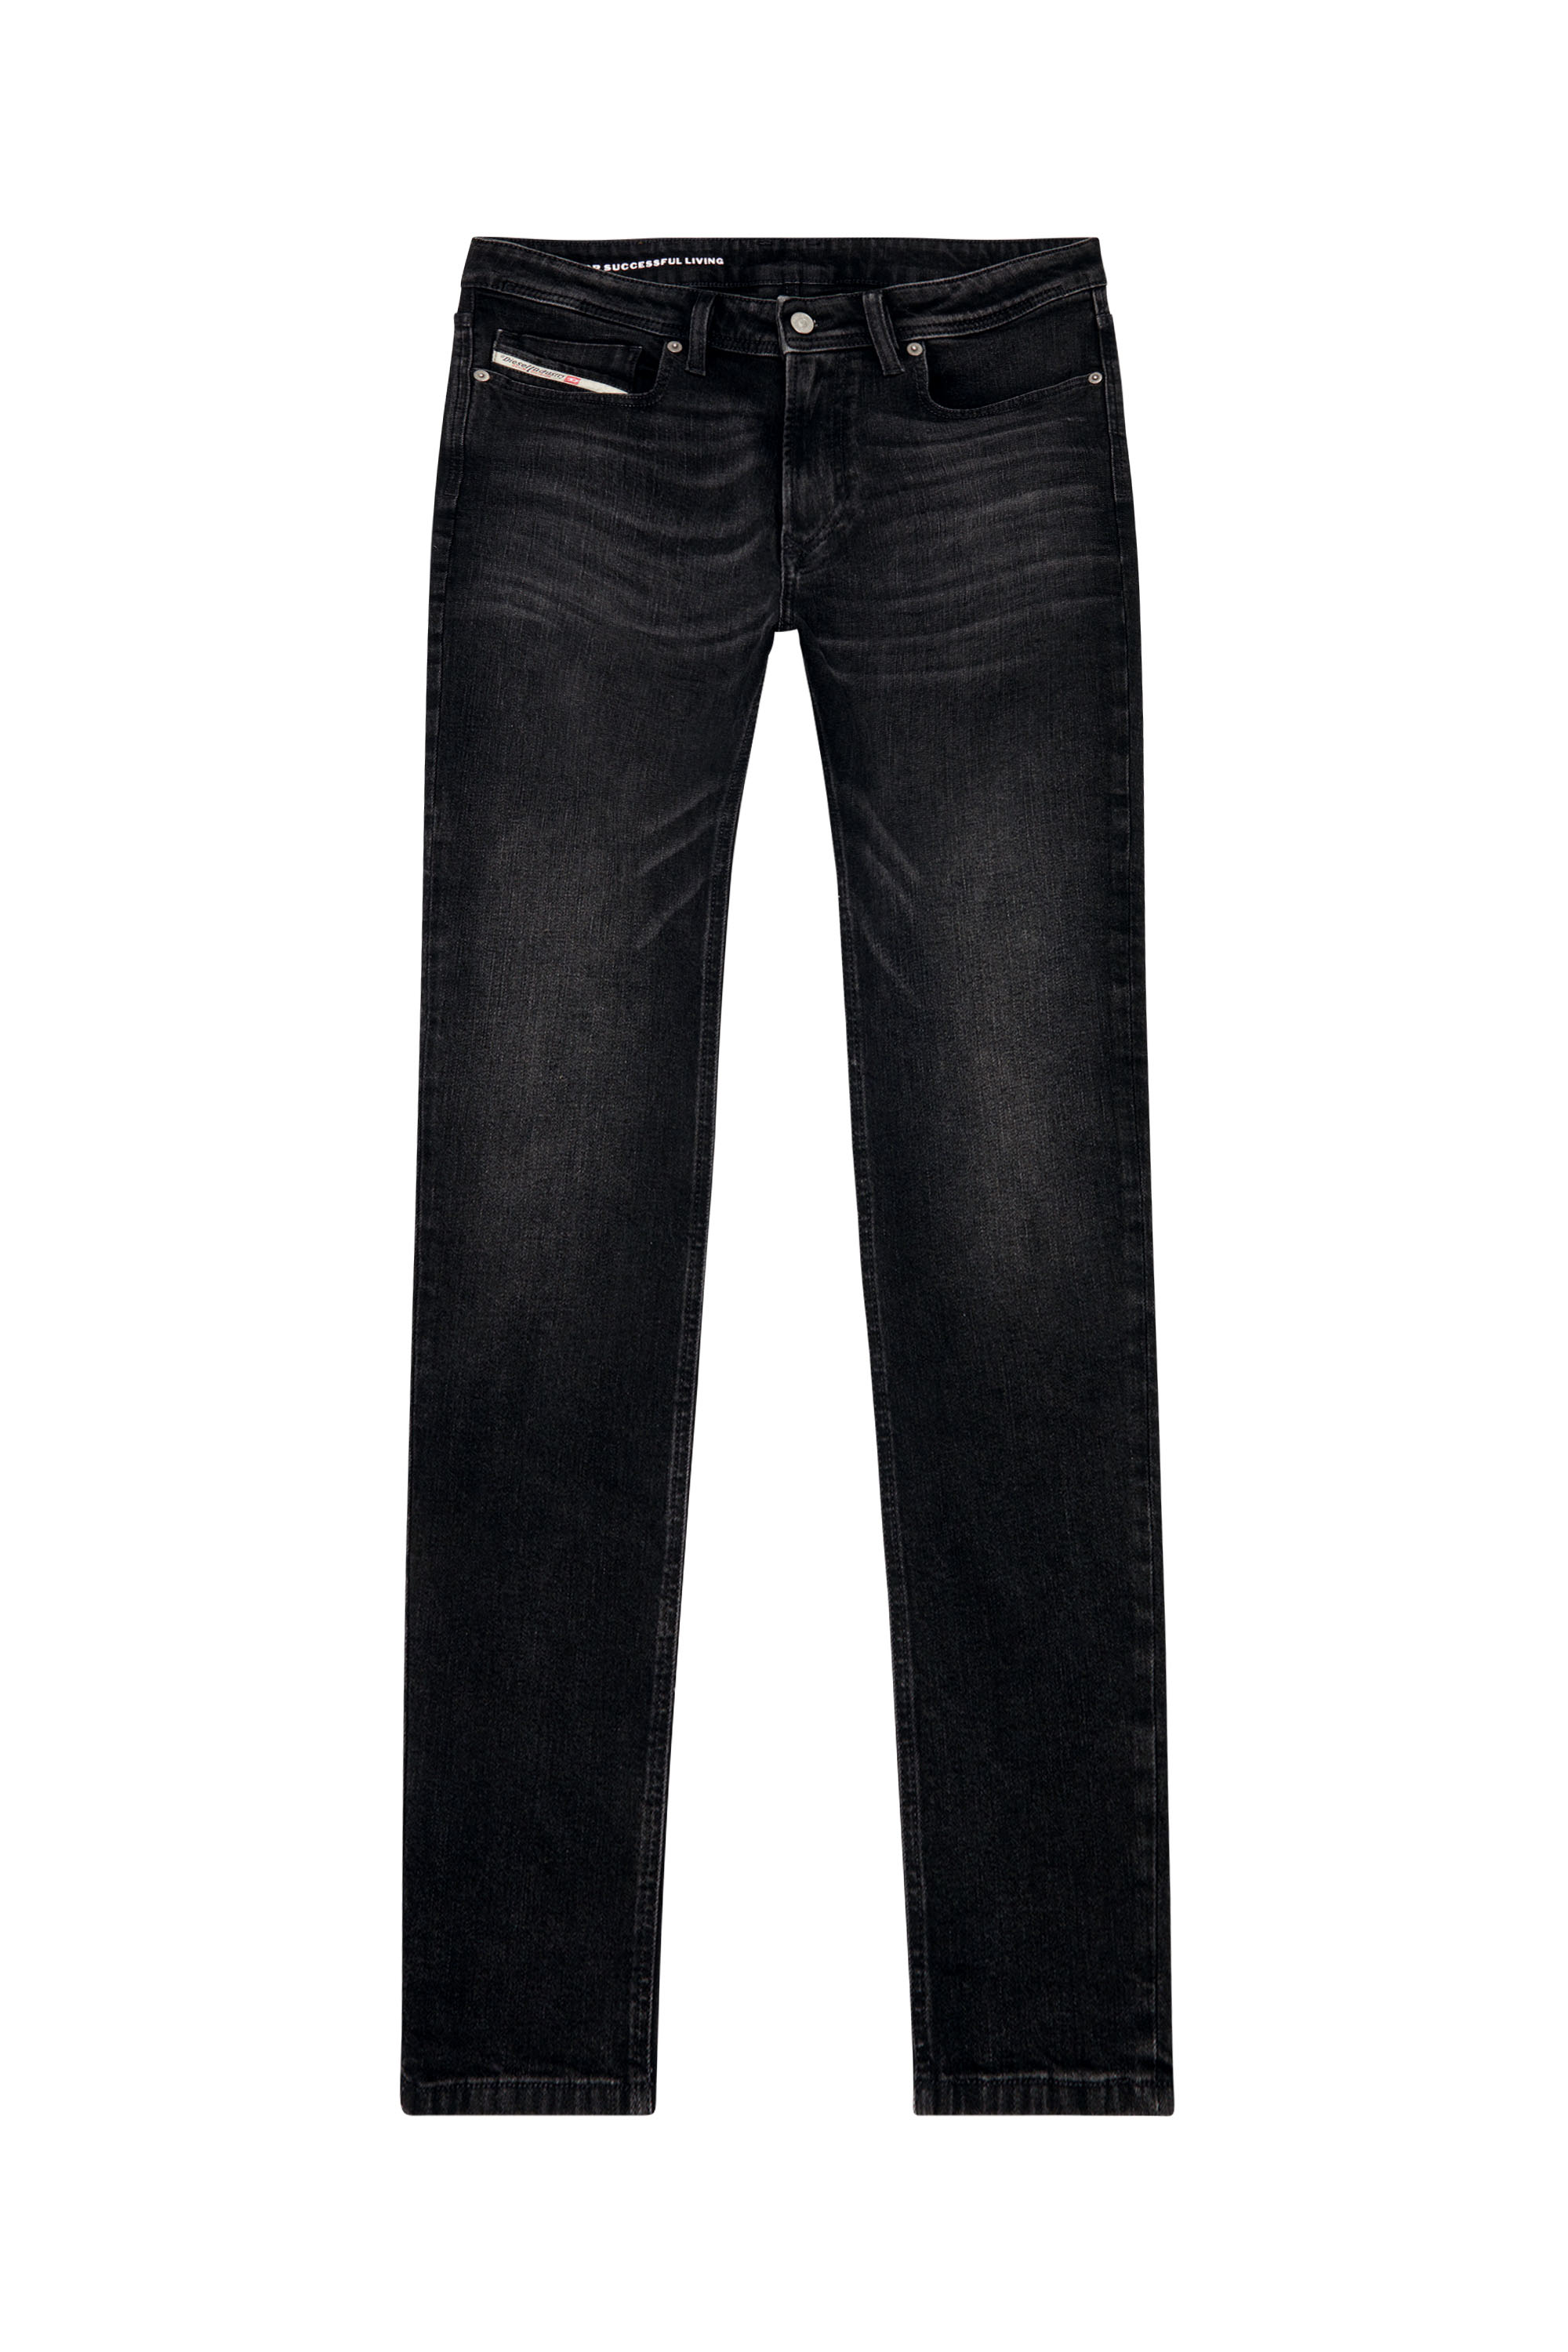 Diesel - Skinny Jeans 1979 Sleenker 0GRDA, Black/Dark grey - Image 5